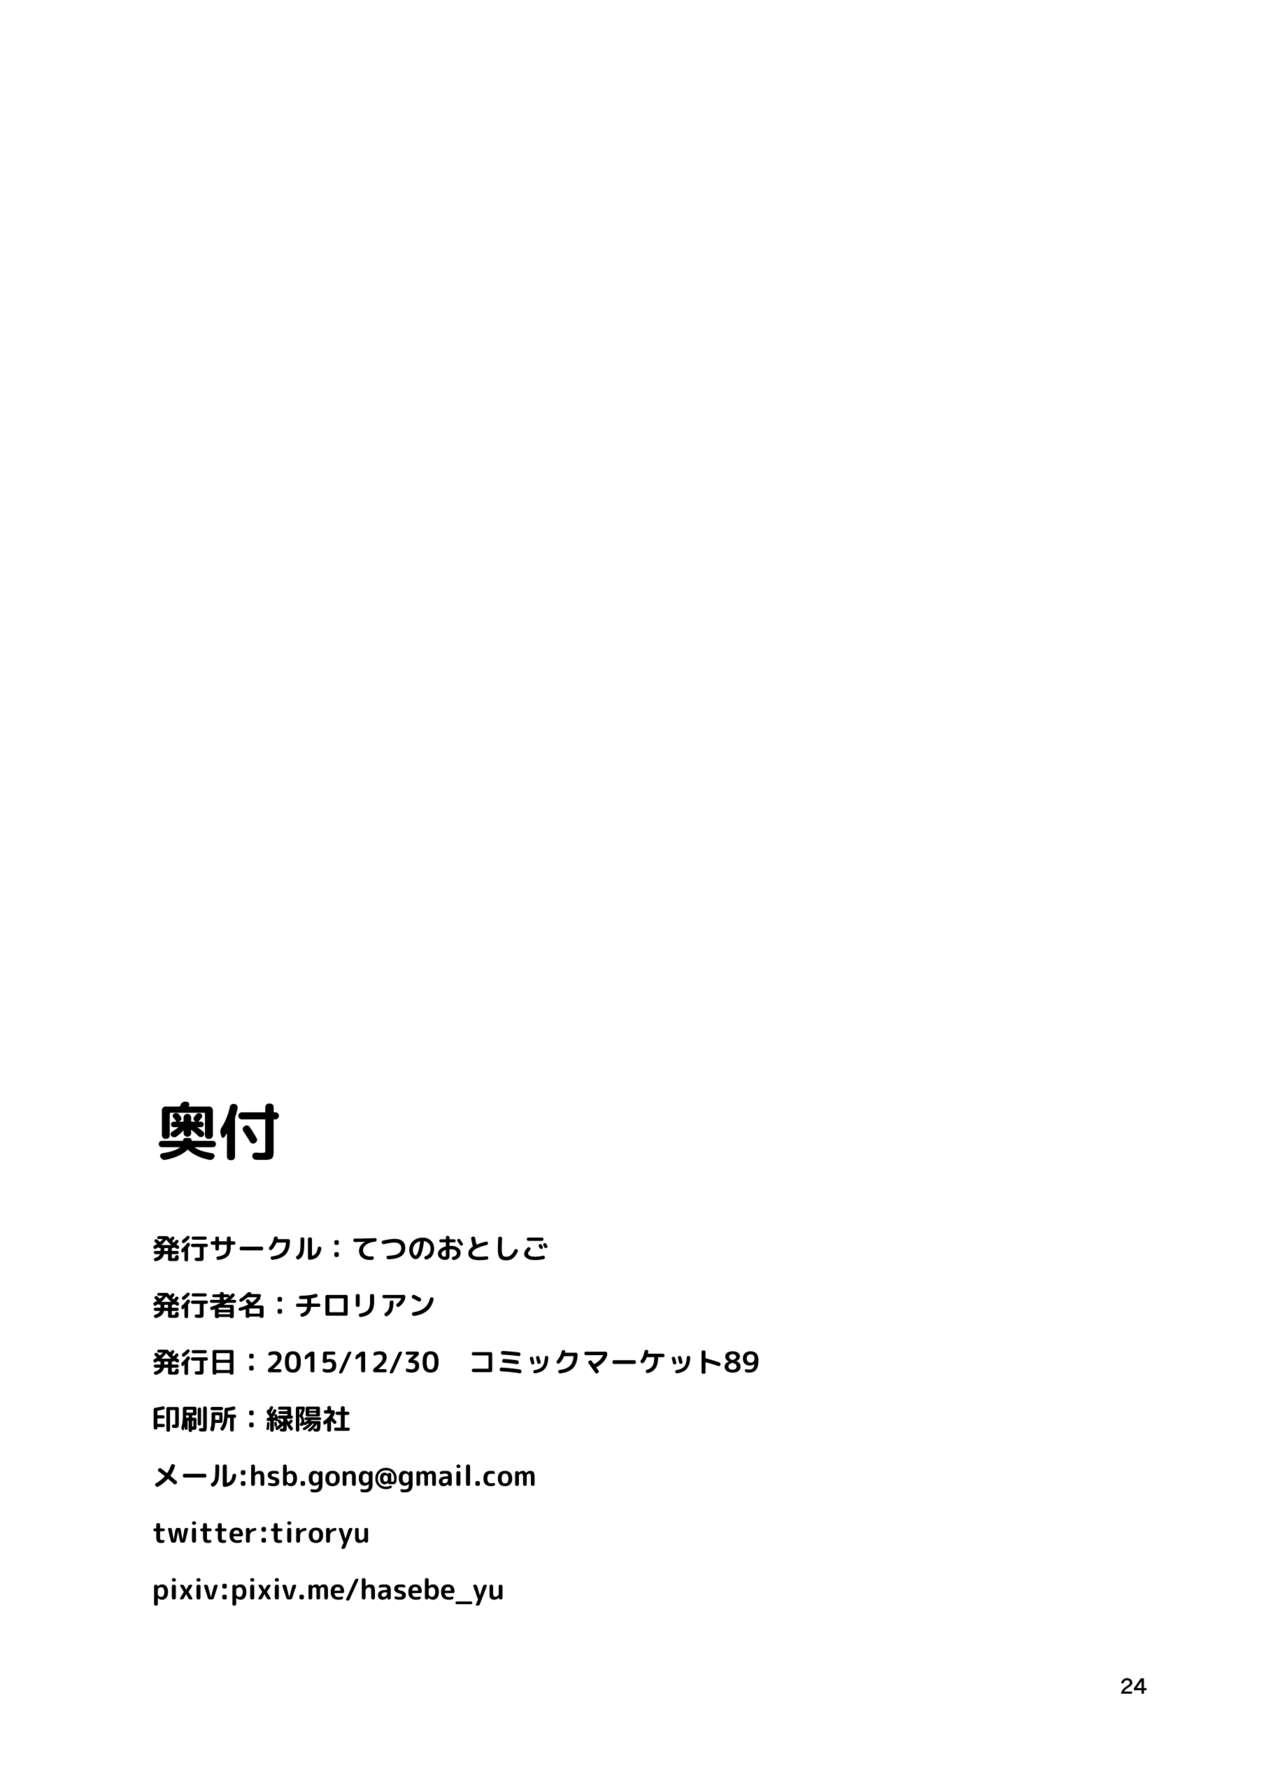 Chaturbate Sagi no Koe Hibiku - Touhou project Amigo - Page 24